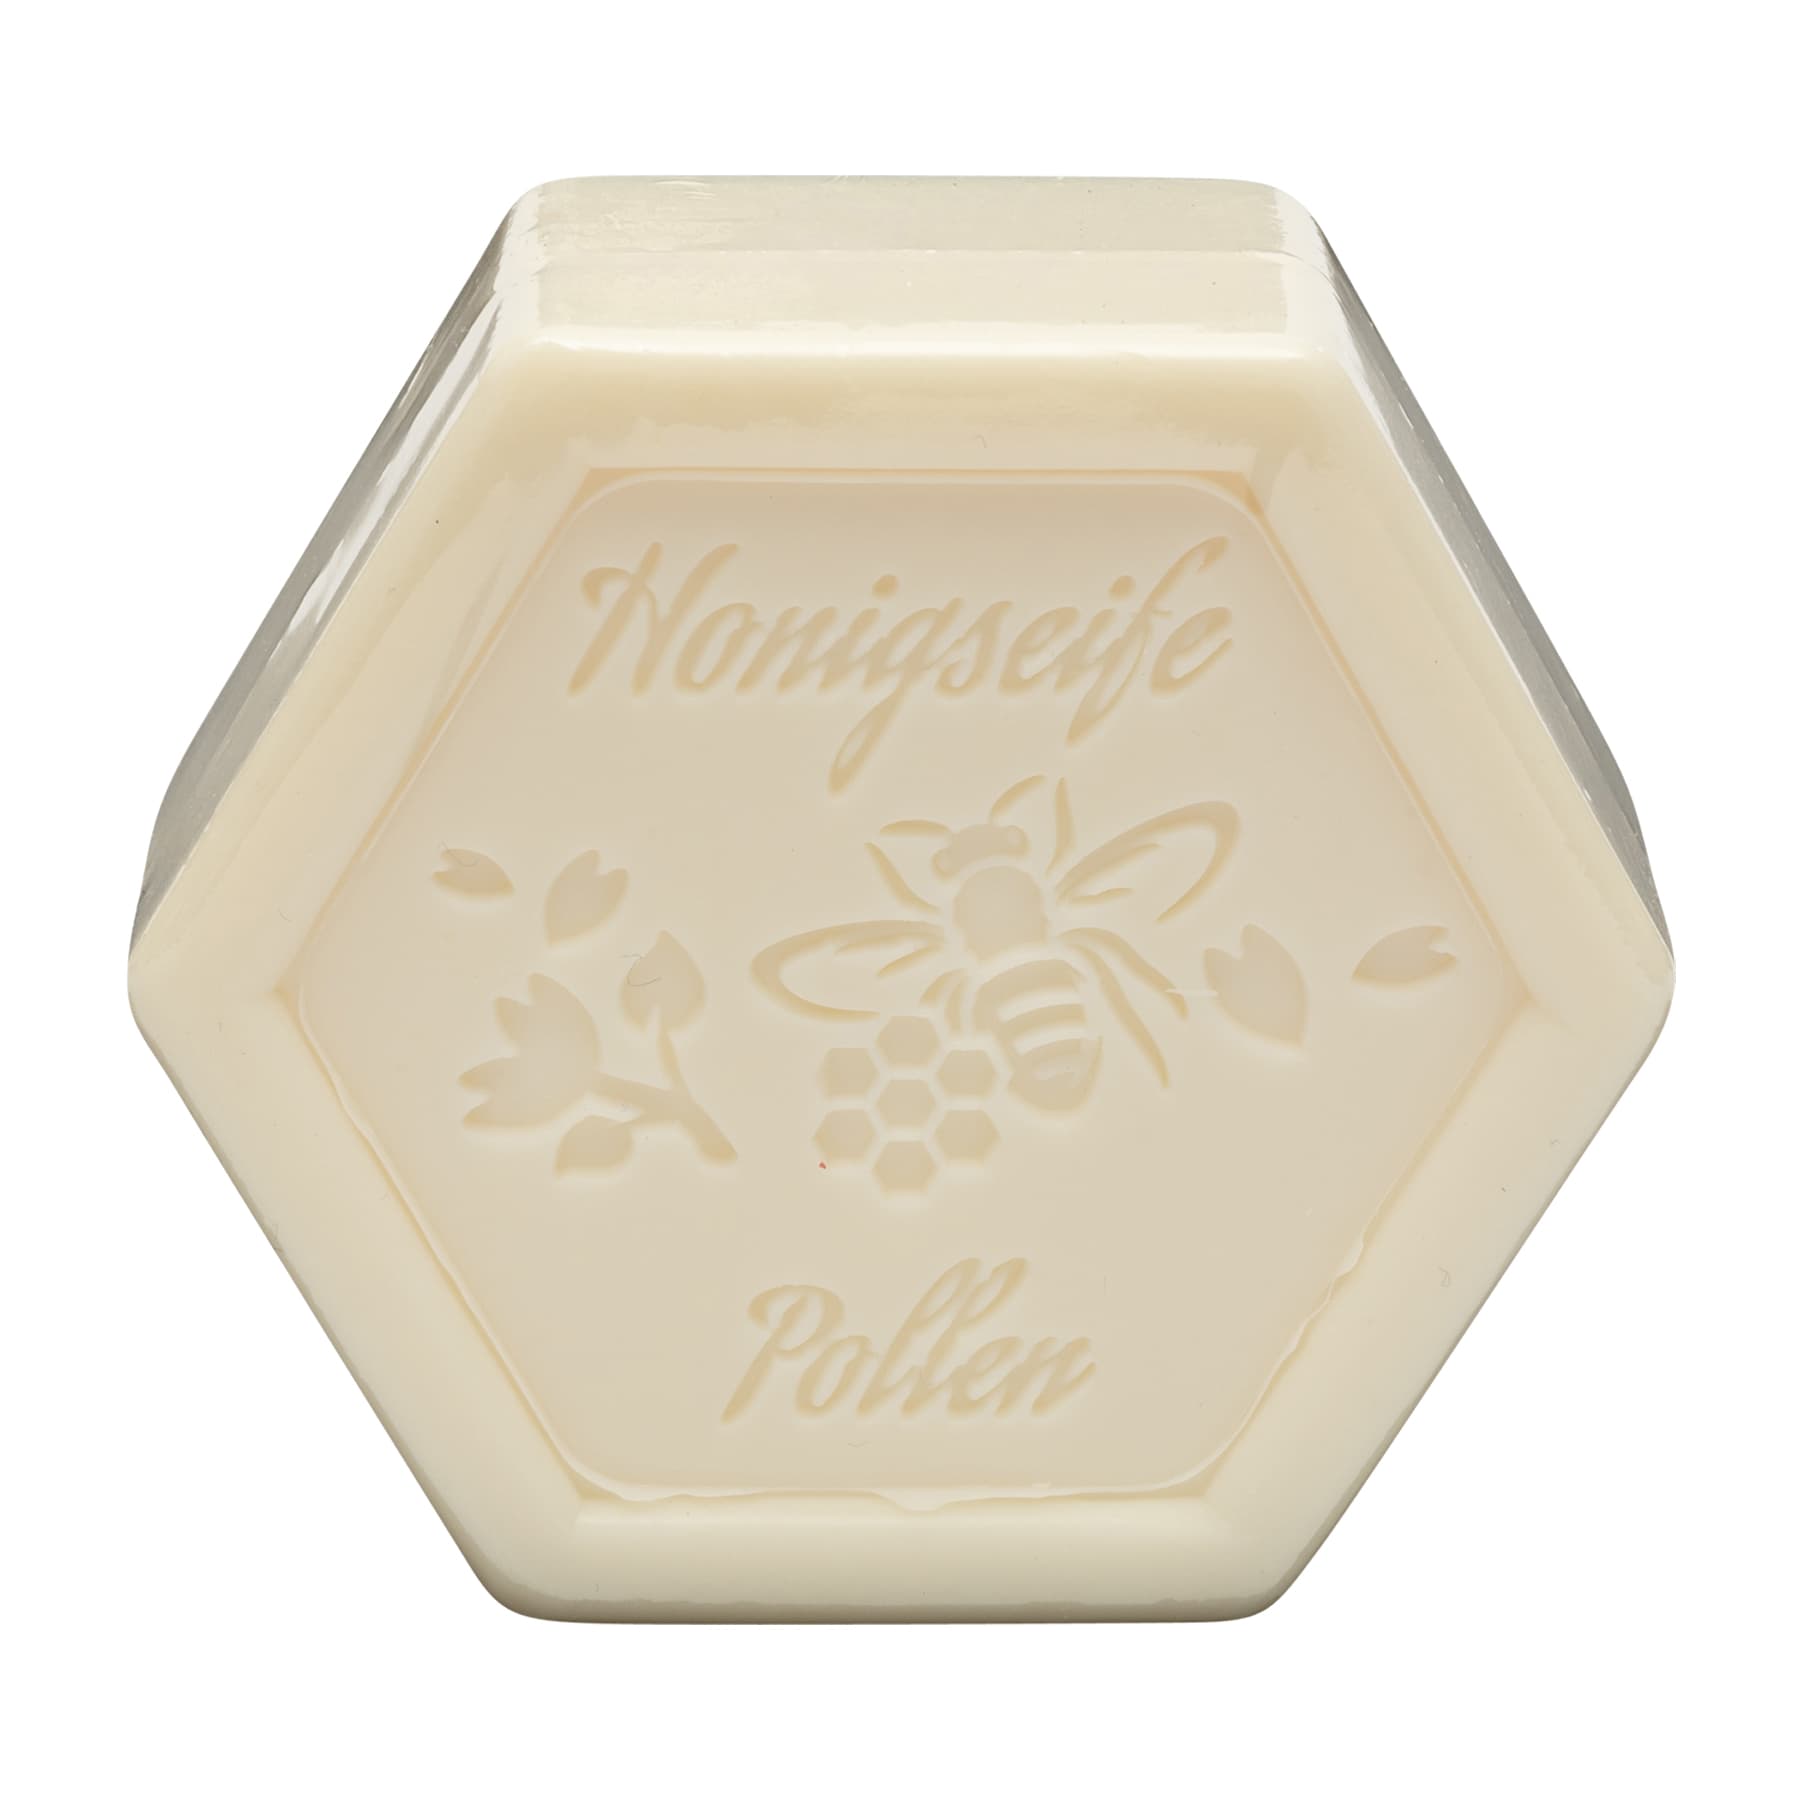 Honigseife mit Pollen 100 g in Sechseckform, foliert und etikettiert